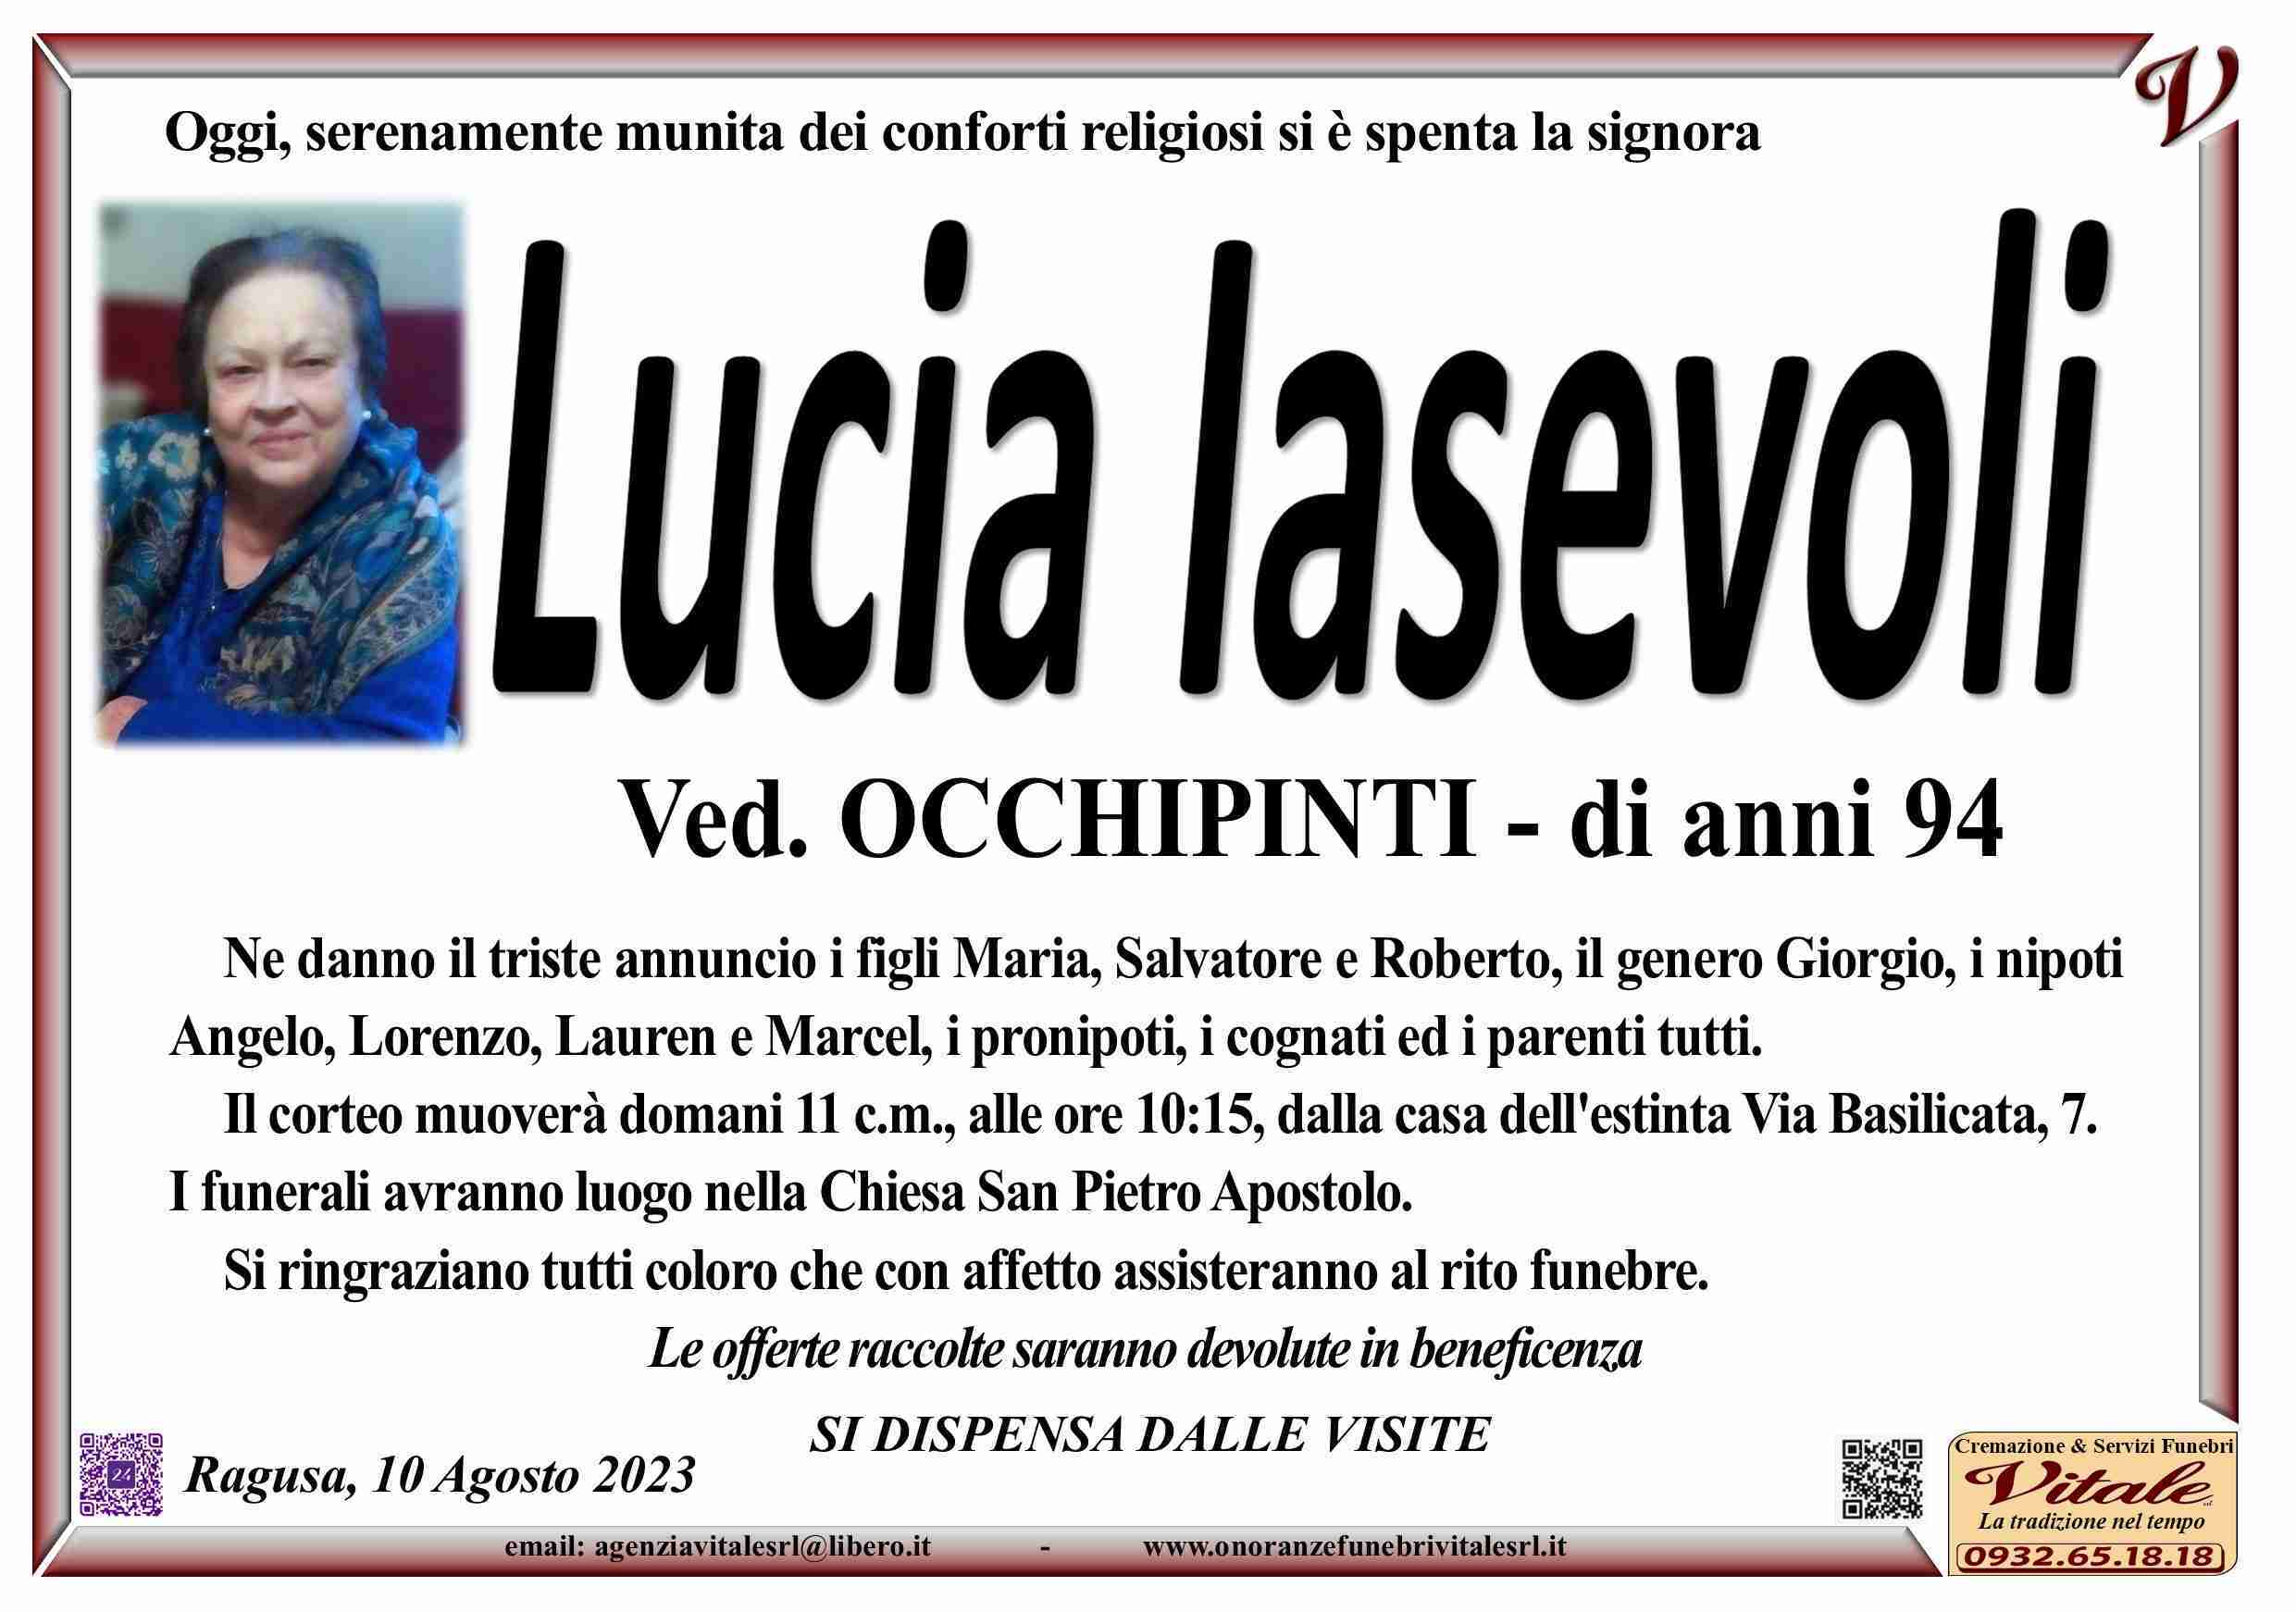 Lucia Iasevoli